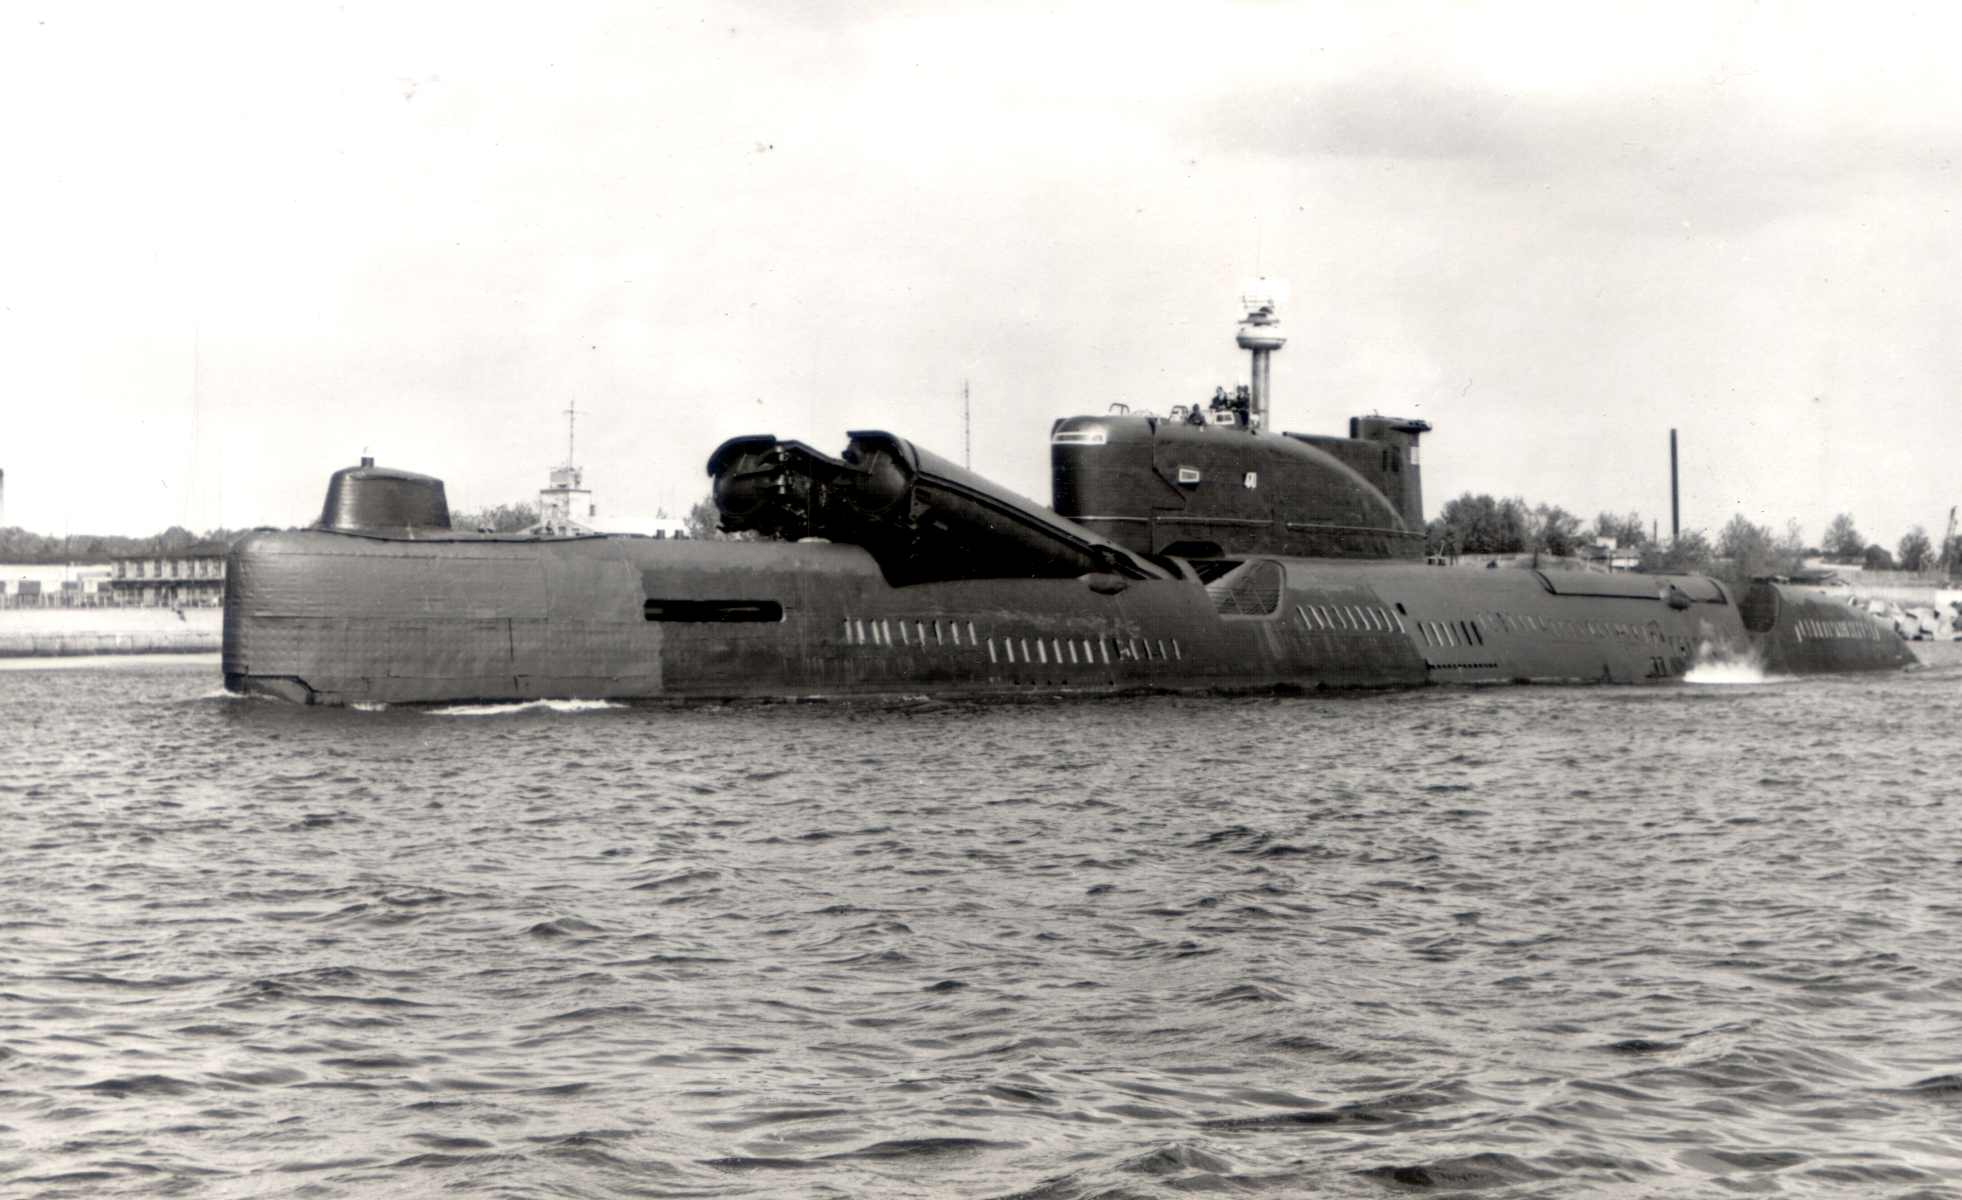 Пл пр т. Подводная лодка Касатка пр 651. Пл 651 проекта Видяево. Проект 651 подводная лодка. Подводные лодки. Проект 651э.